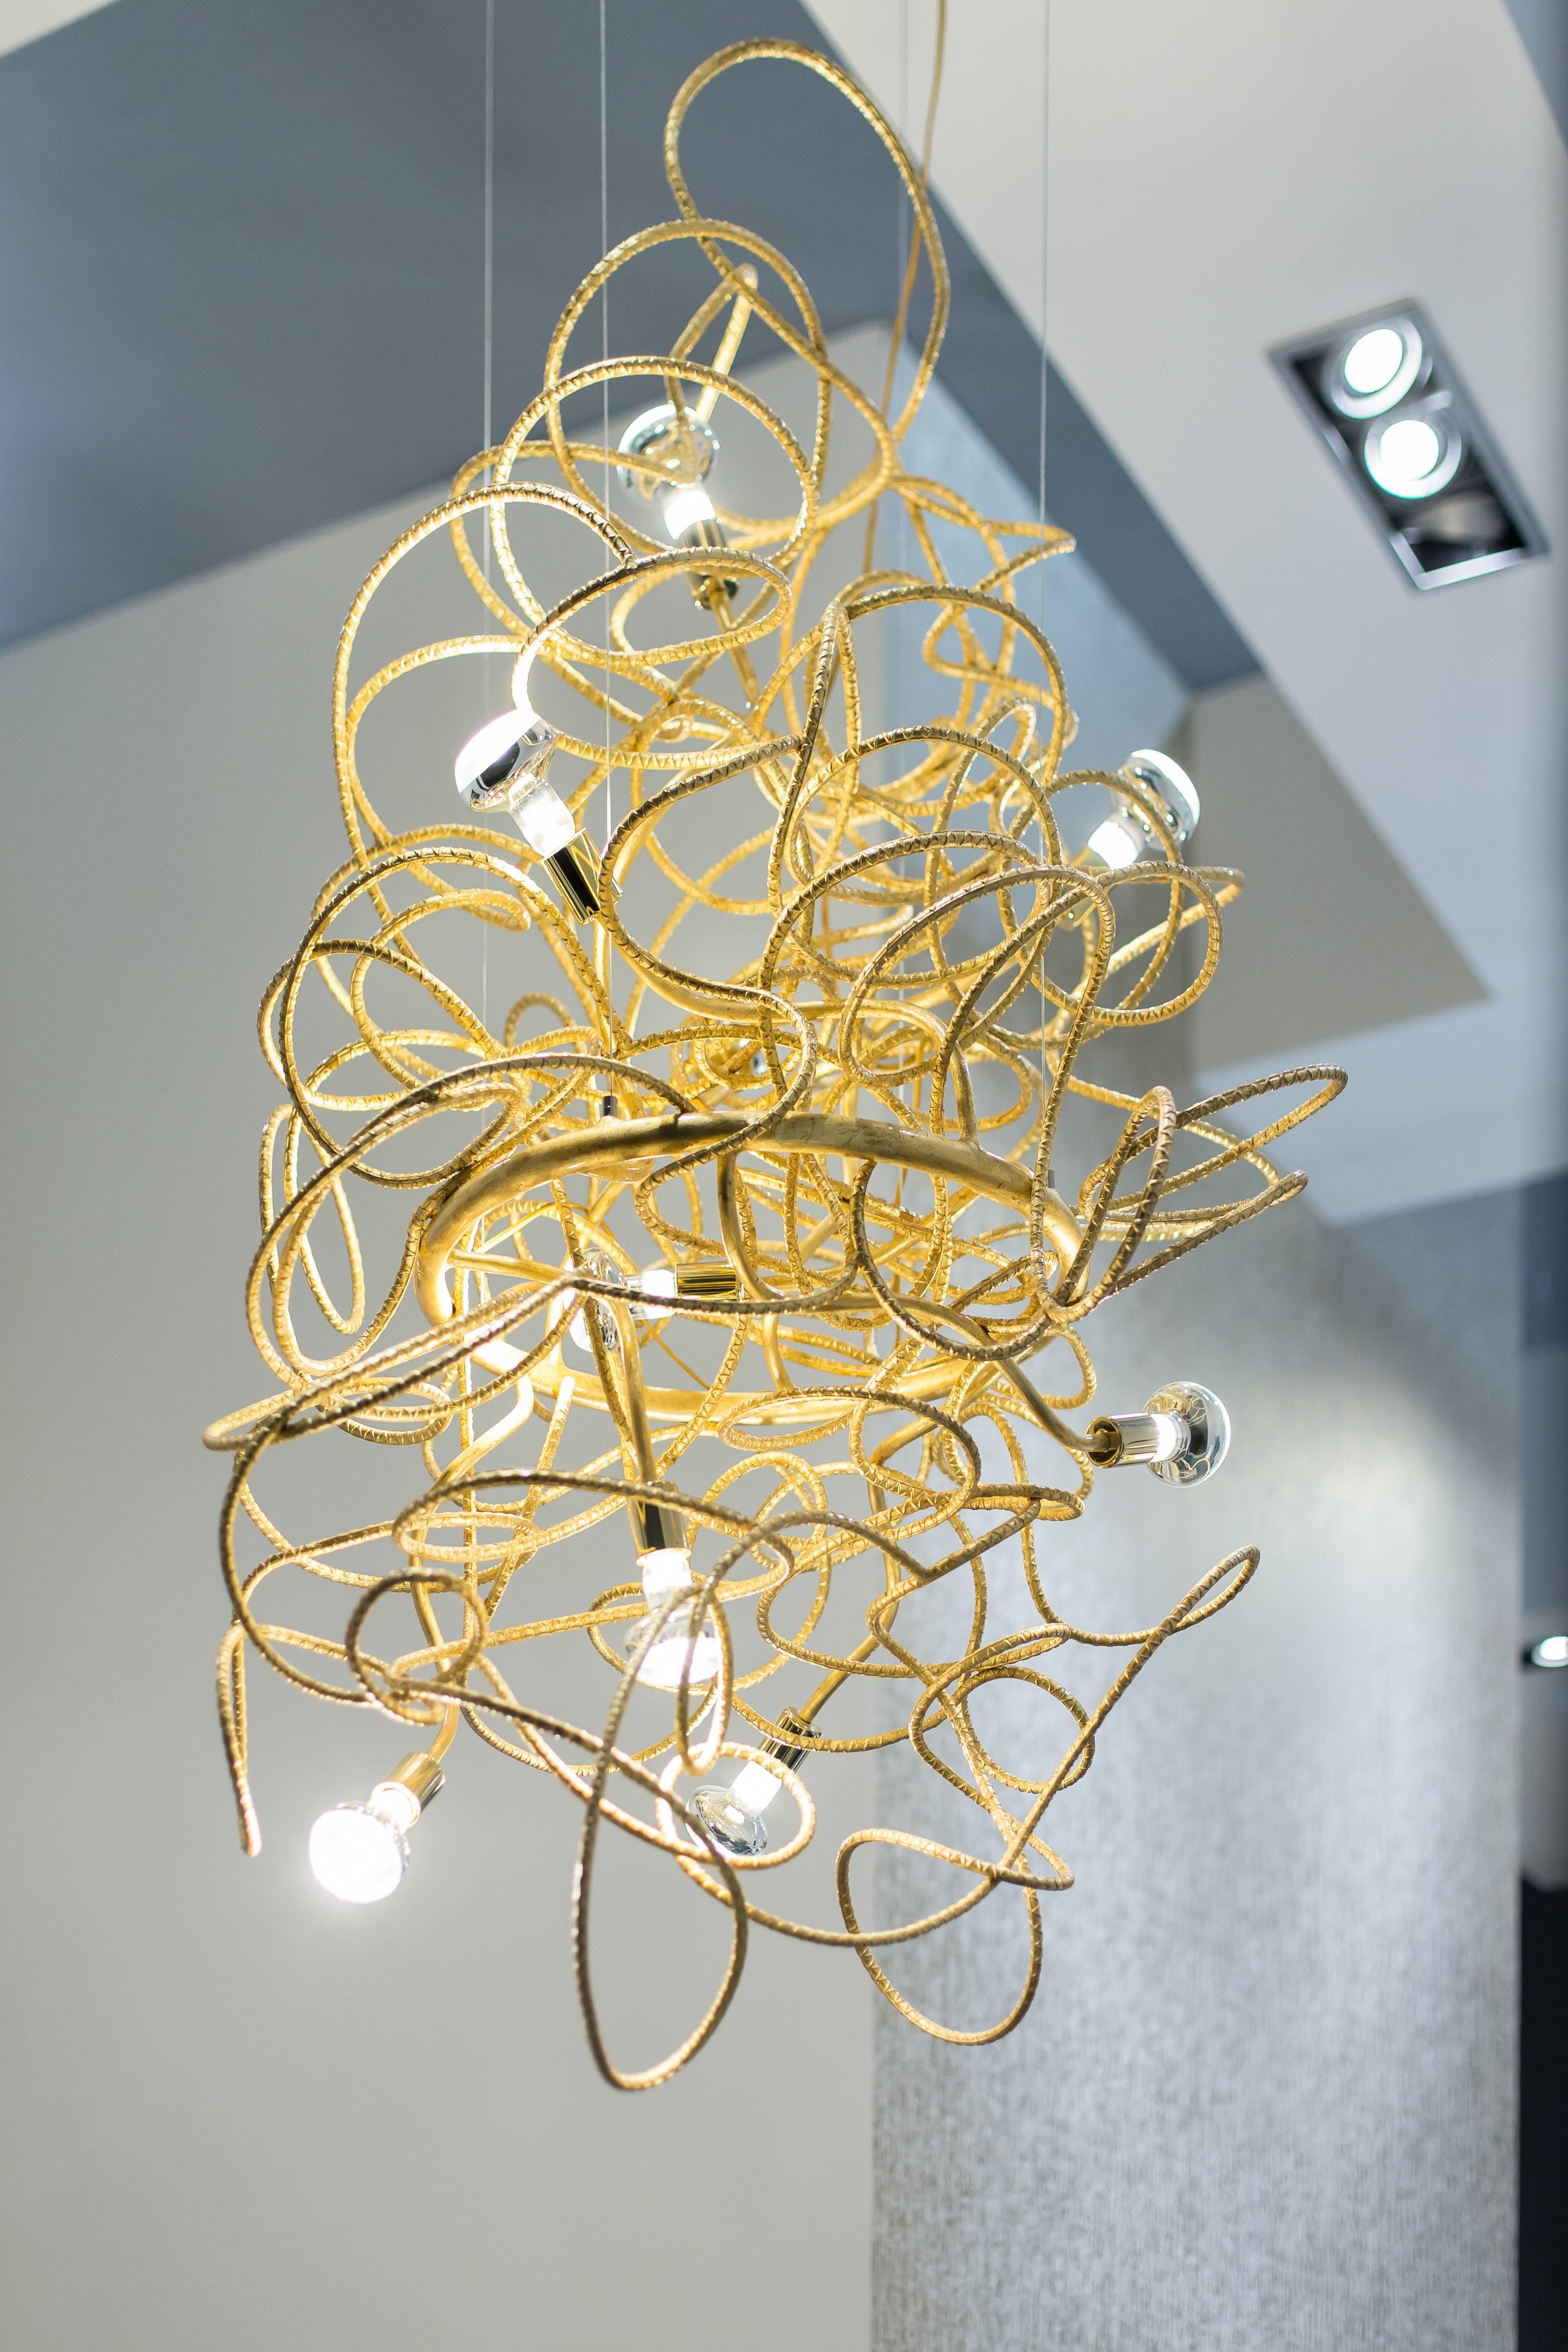 DAX VERTICAL CHANDELIER - Modernes skulpturales Lichtdesign mit Blattgoldbeschichtung

Der Dax-Kronleuchter ist ein atemberaubendes Kunstwerk, das den Stil jedes Raumes aufwertet. Dieser in Kalifornien handgefertigte Kronleuchter besteht aus